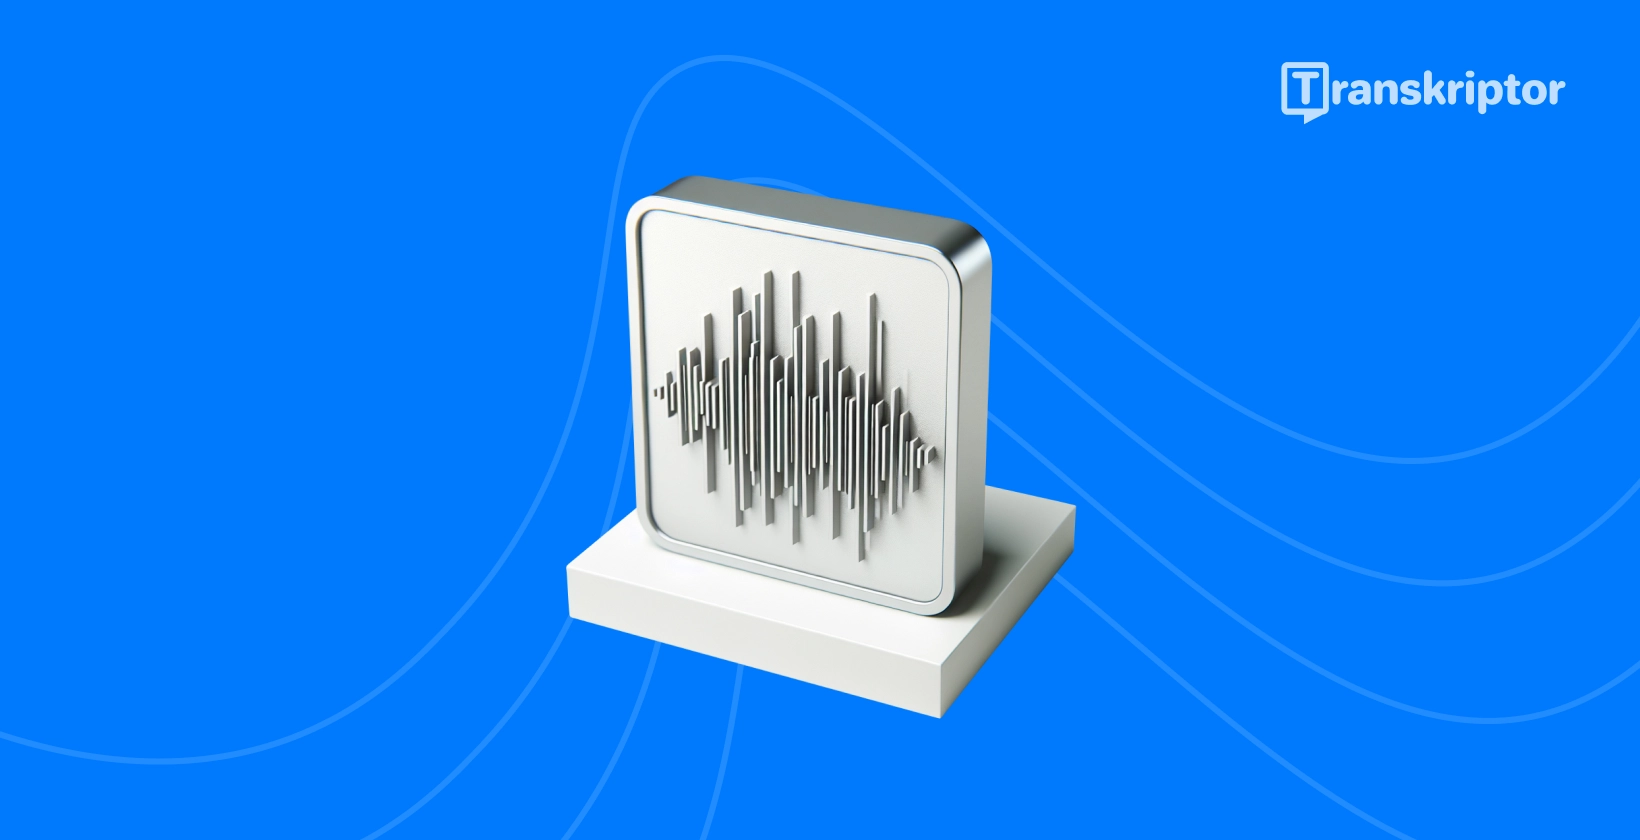 Helilainete illustratsioon monitoril kujutab endast reaalajas heli transkriptsiooni protsessi, nagu on üksikasjalikult kirjeldatud juhendis.